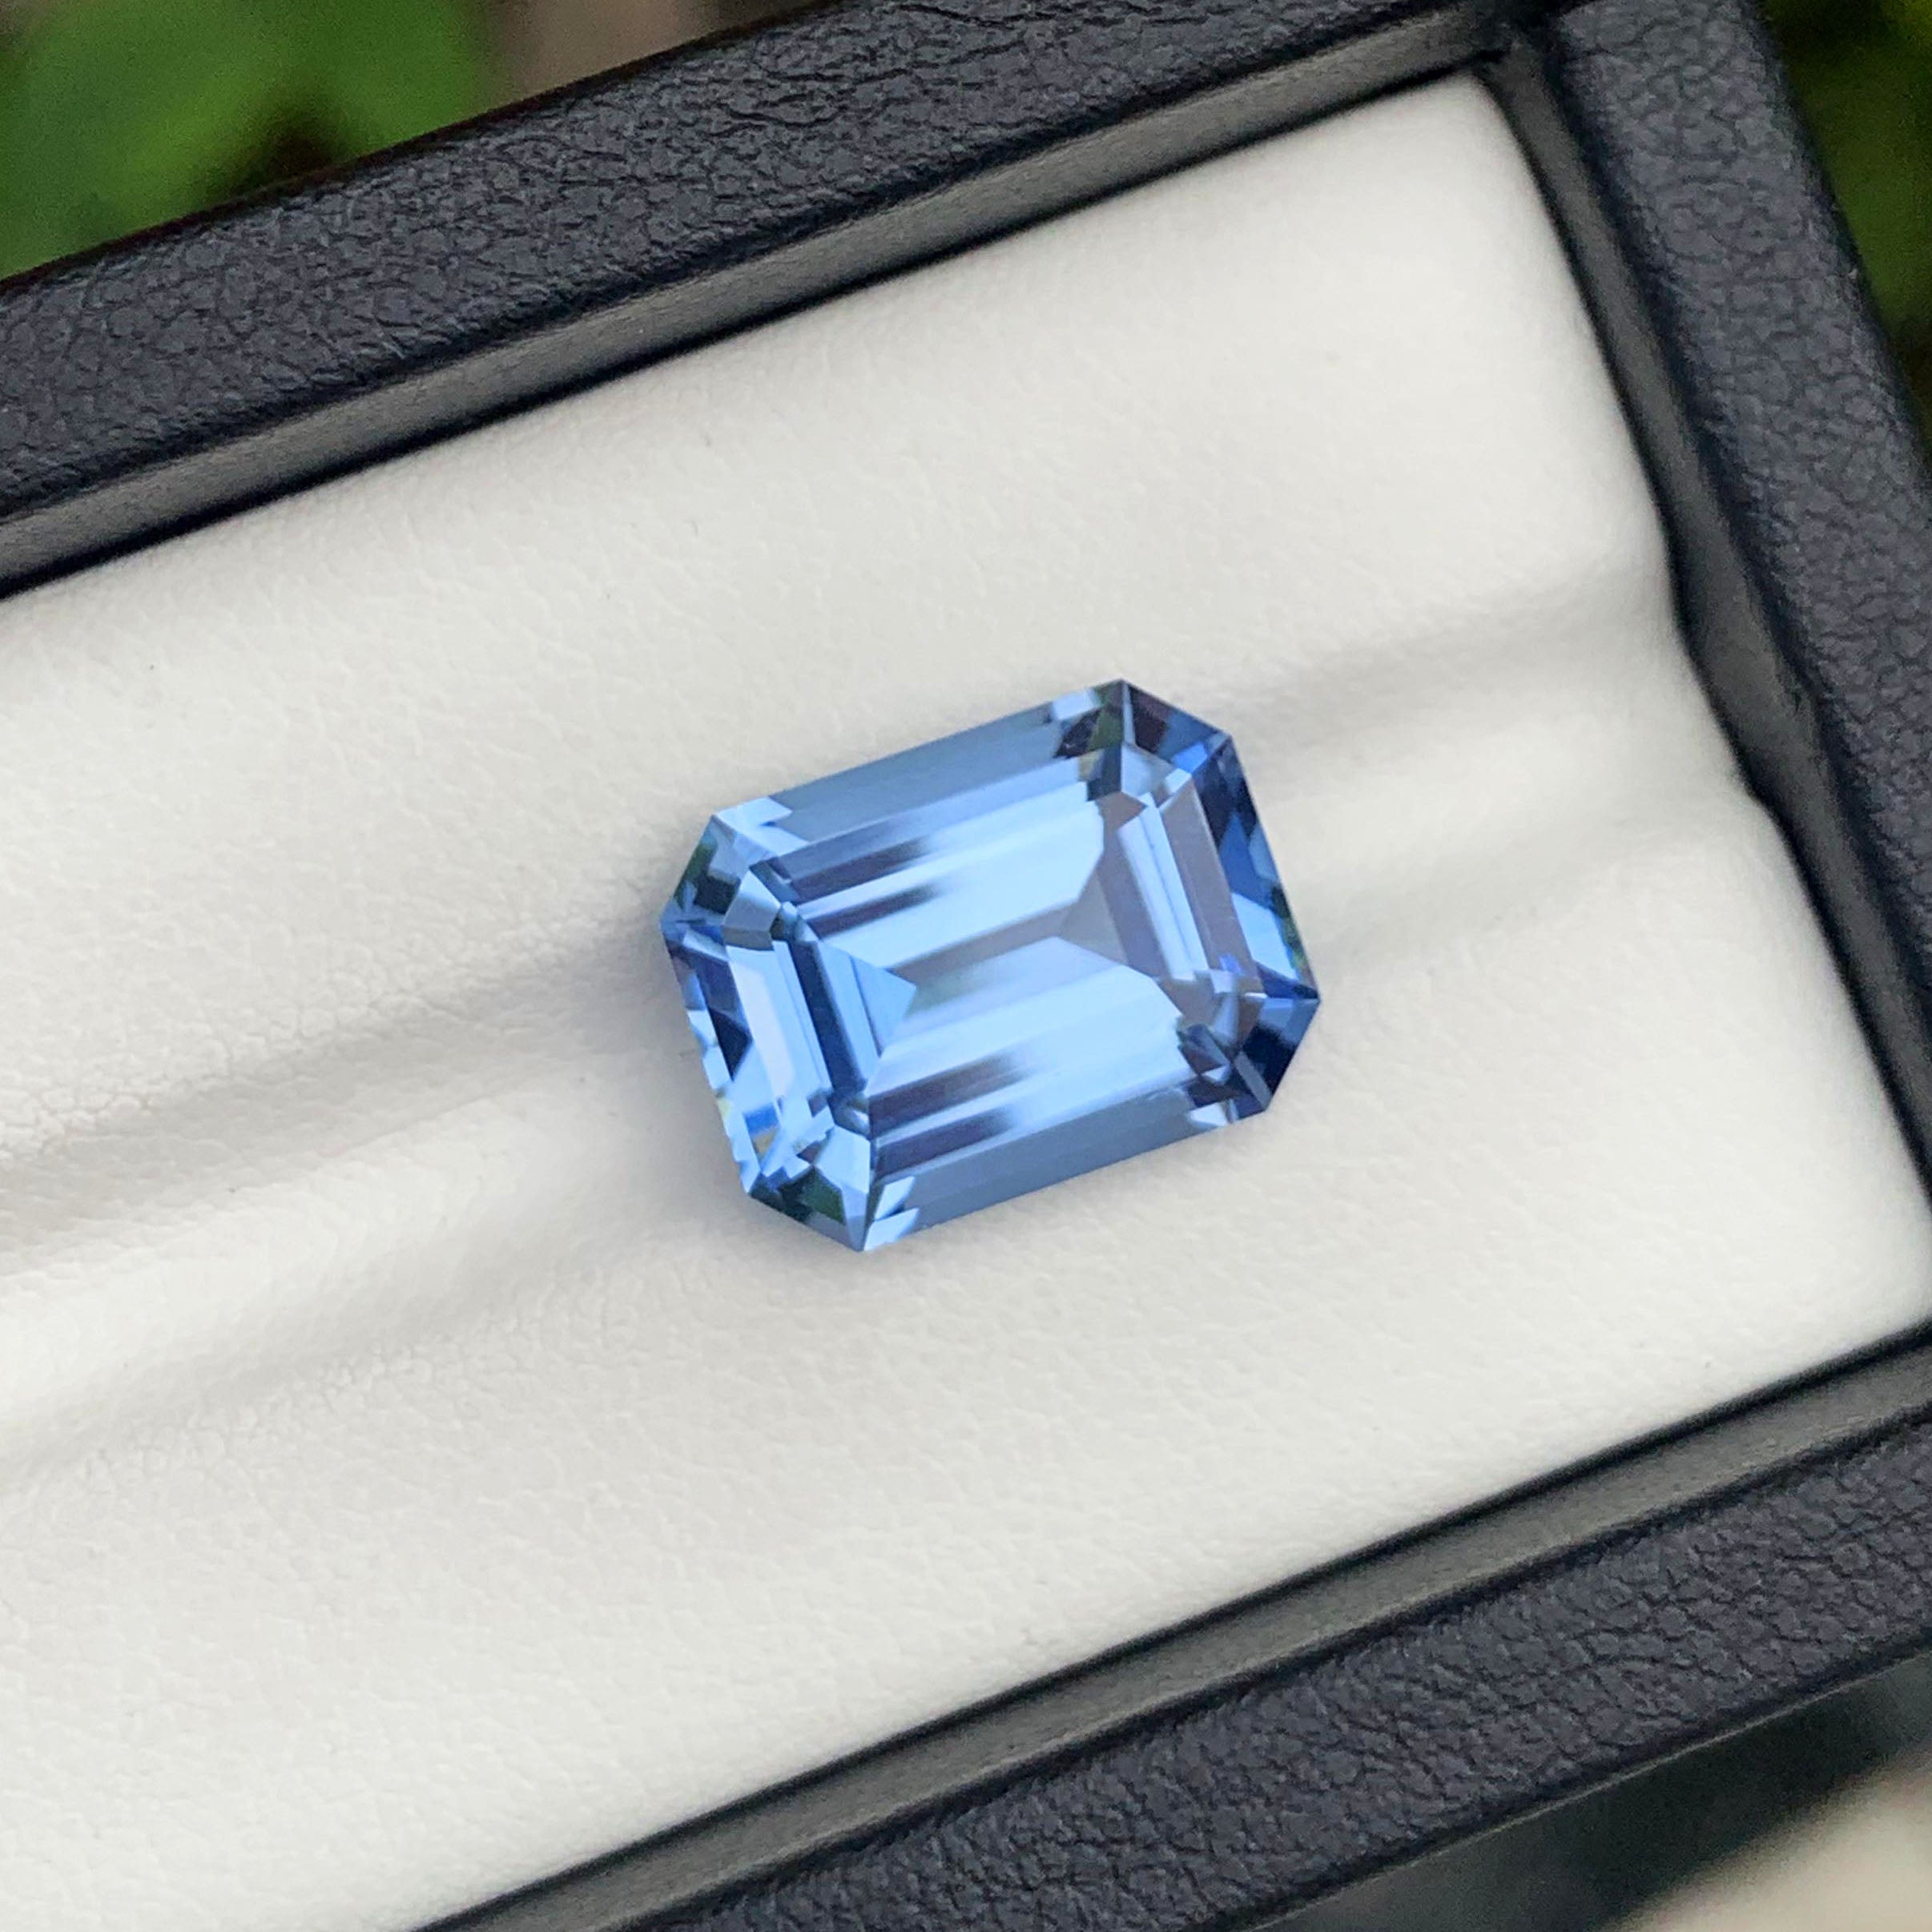 Flawless Aquamarine Gemstone, Blue Aquamarine Ring Stone, Emerald Cut Aquamarine Loose Stone, Santa Maria Aquamarine, 8.95 CT